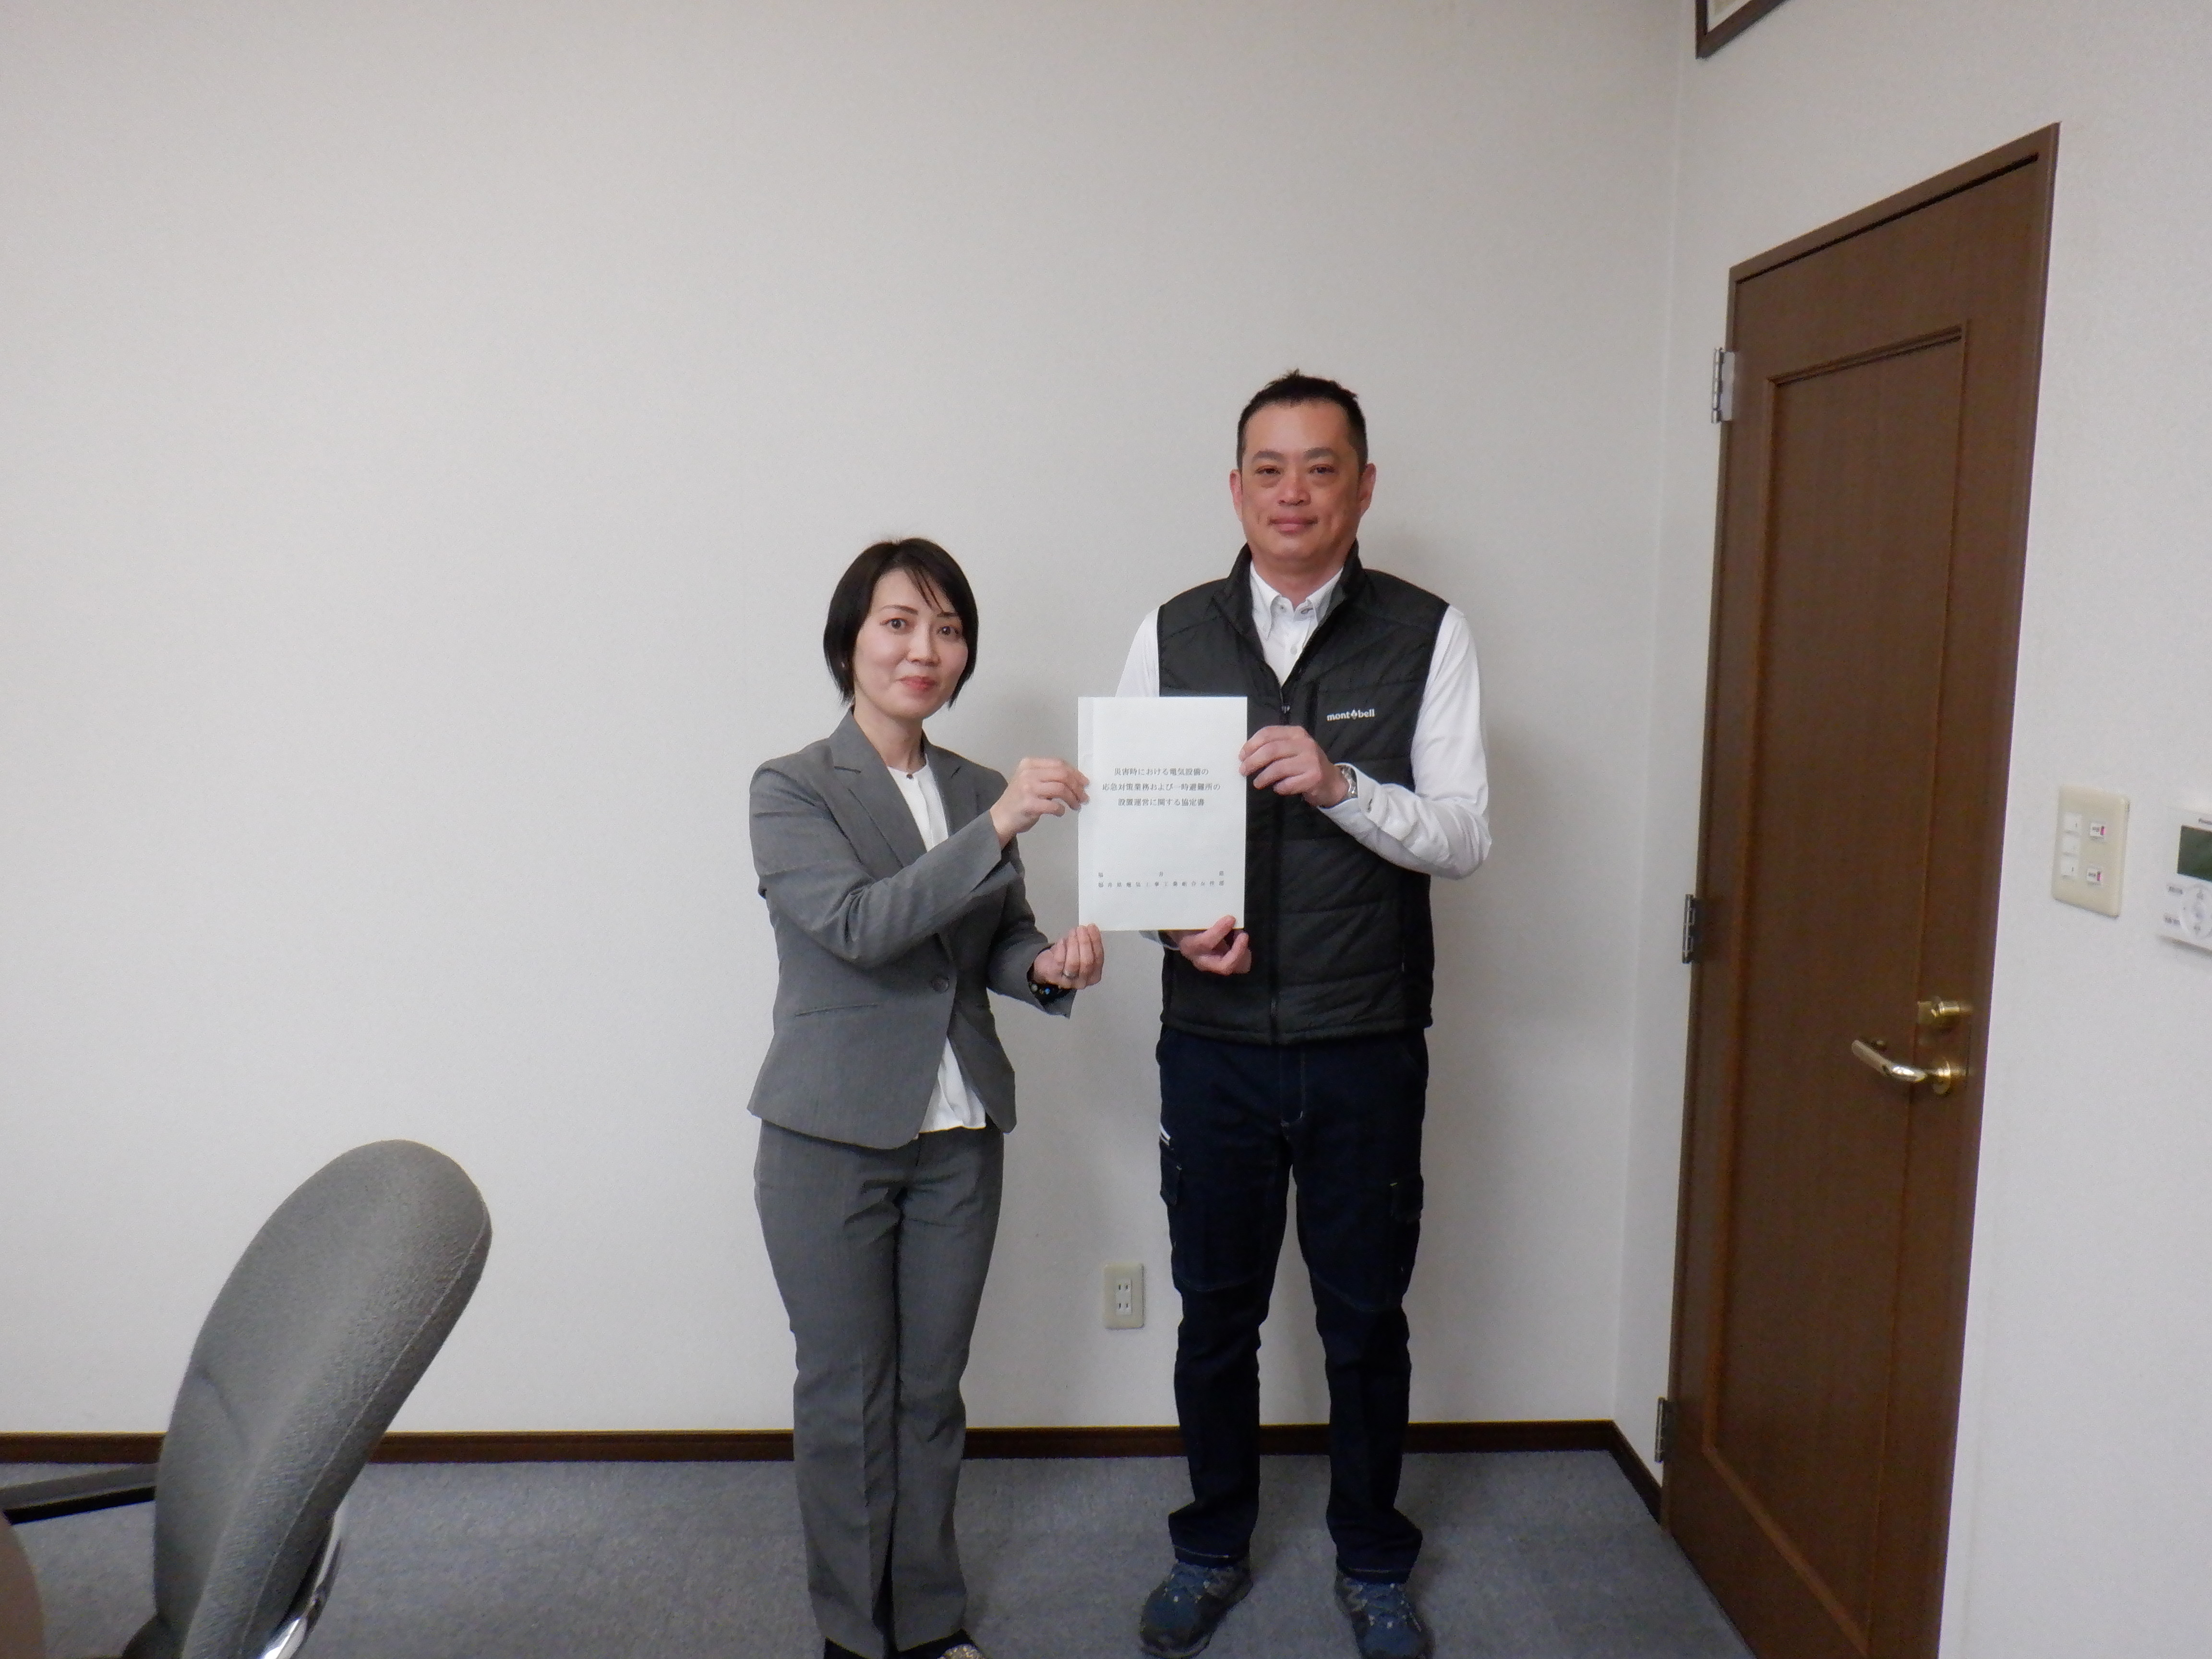 「災害時における電気設備の応急対策業務および一時避難所の設置運営に関する協定」について福井県と福井県電気工事工業組合 女性部との間で防災協定を締結しました。のイメージ